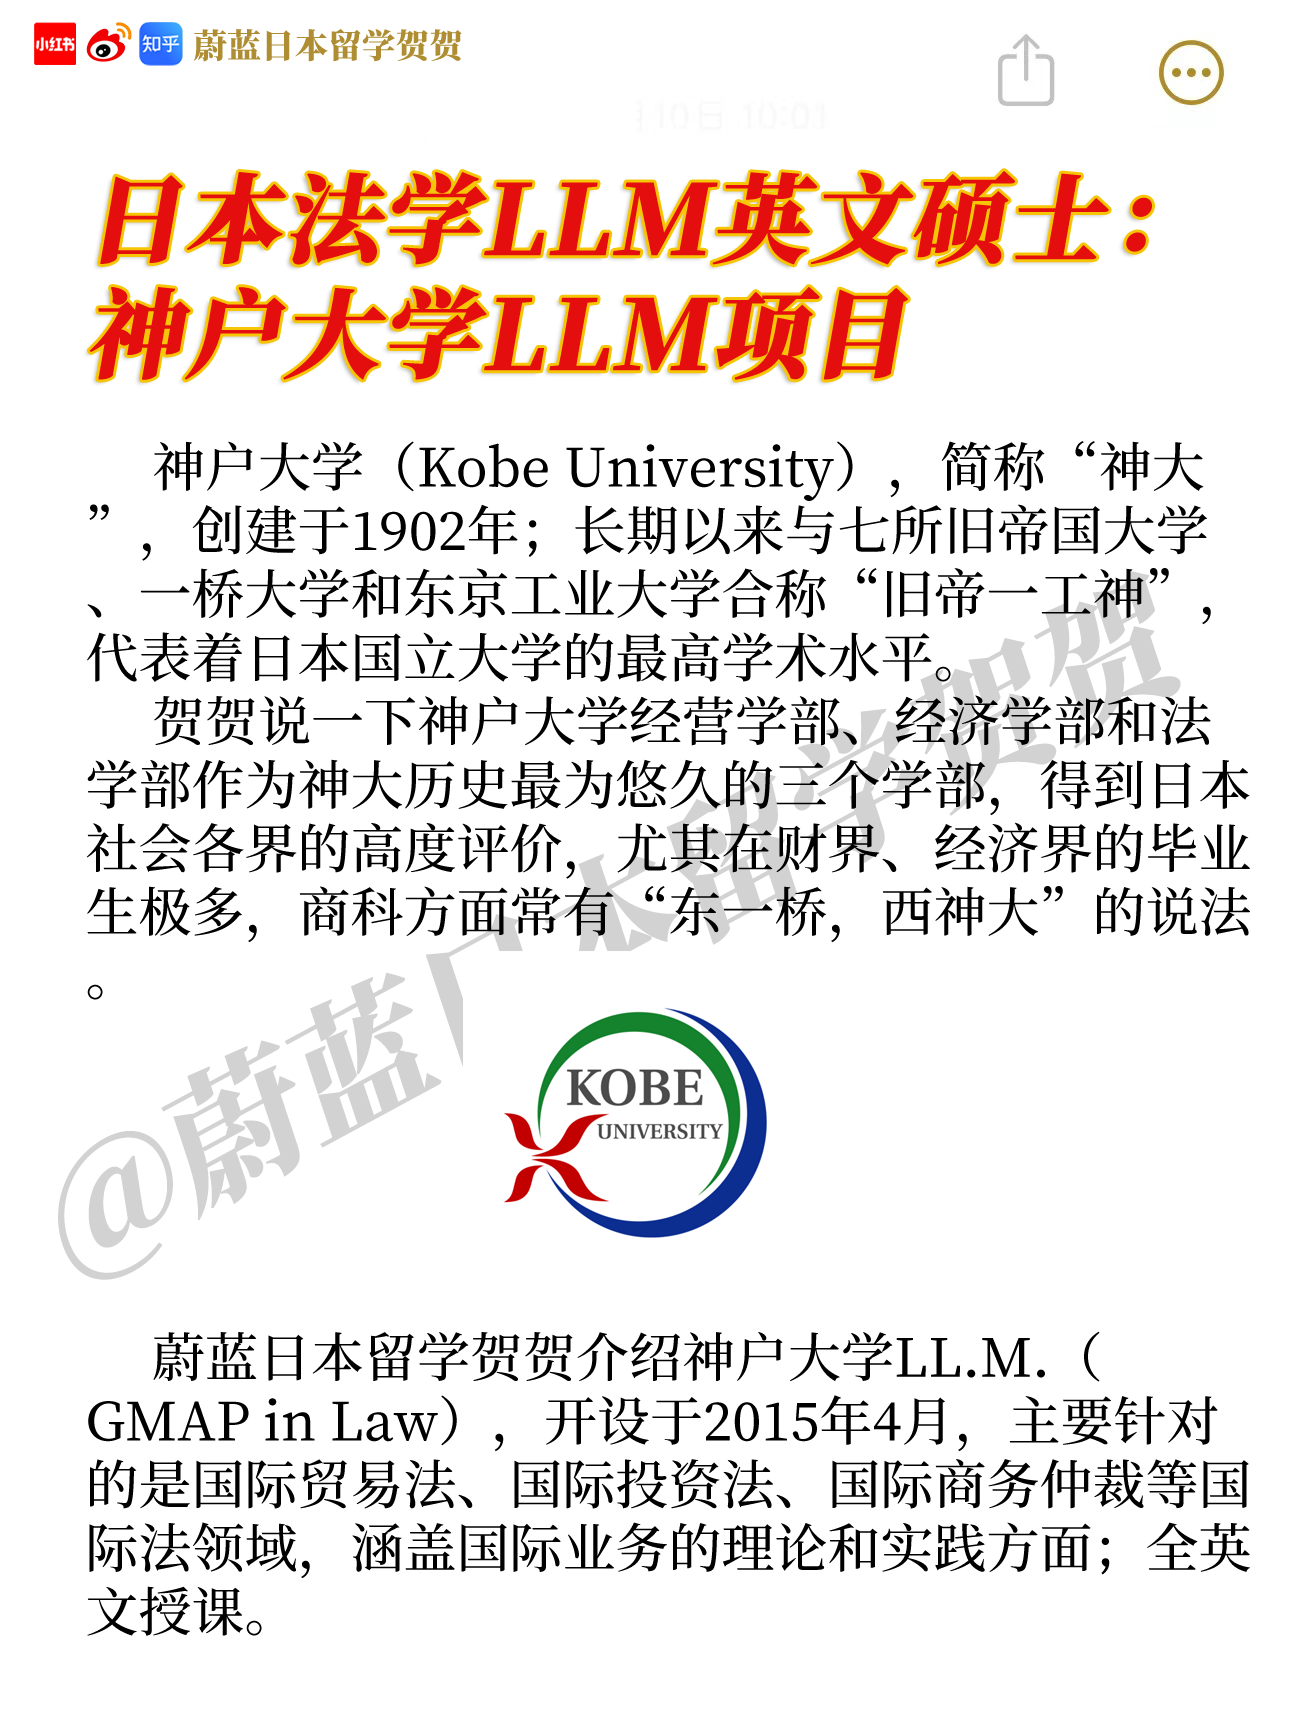 神户大学法学LLM项目